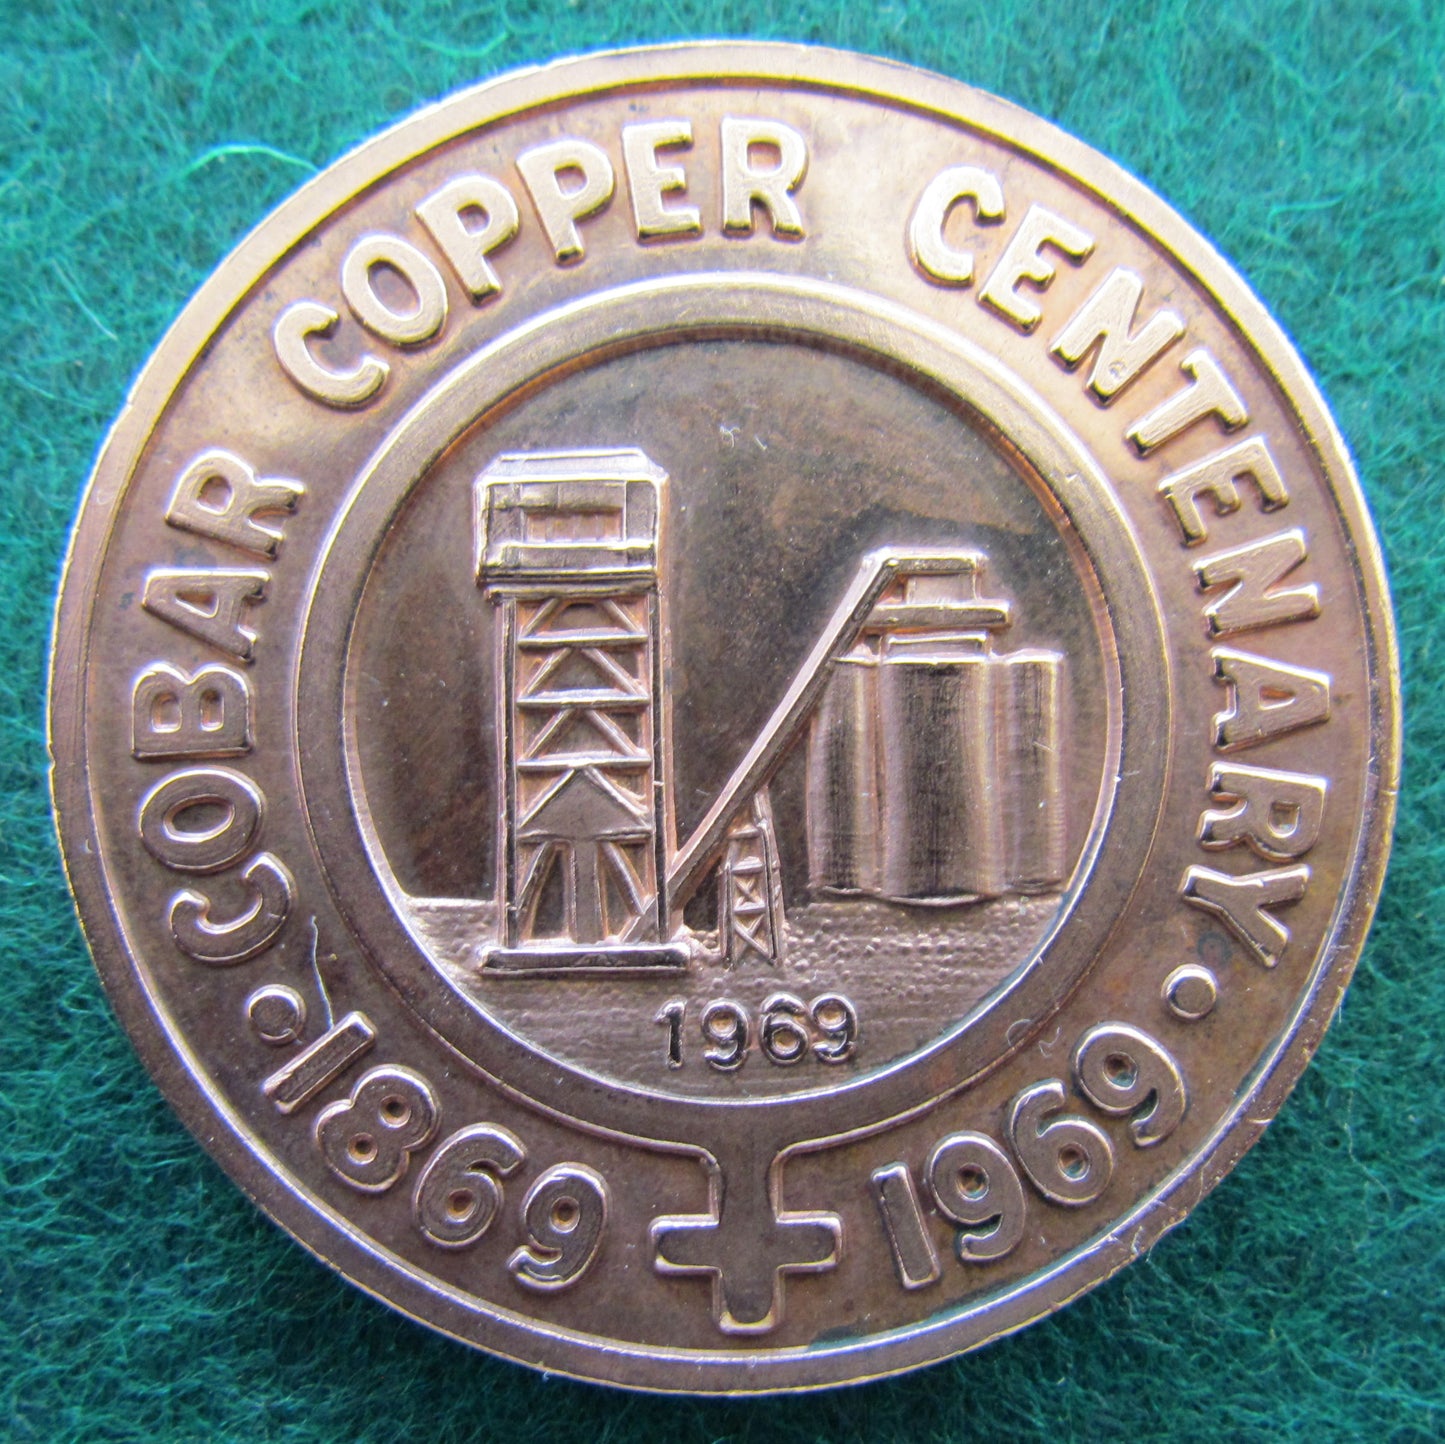 Cobar Copper Centenary 1869 - 1969 Medallion